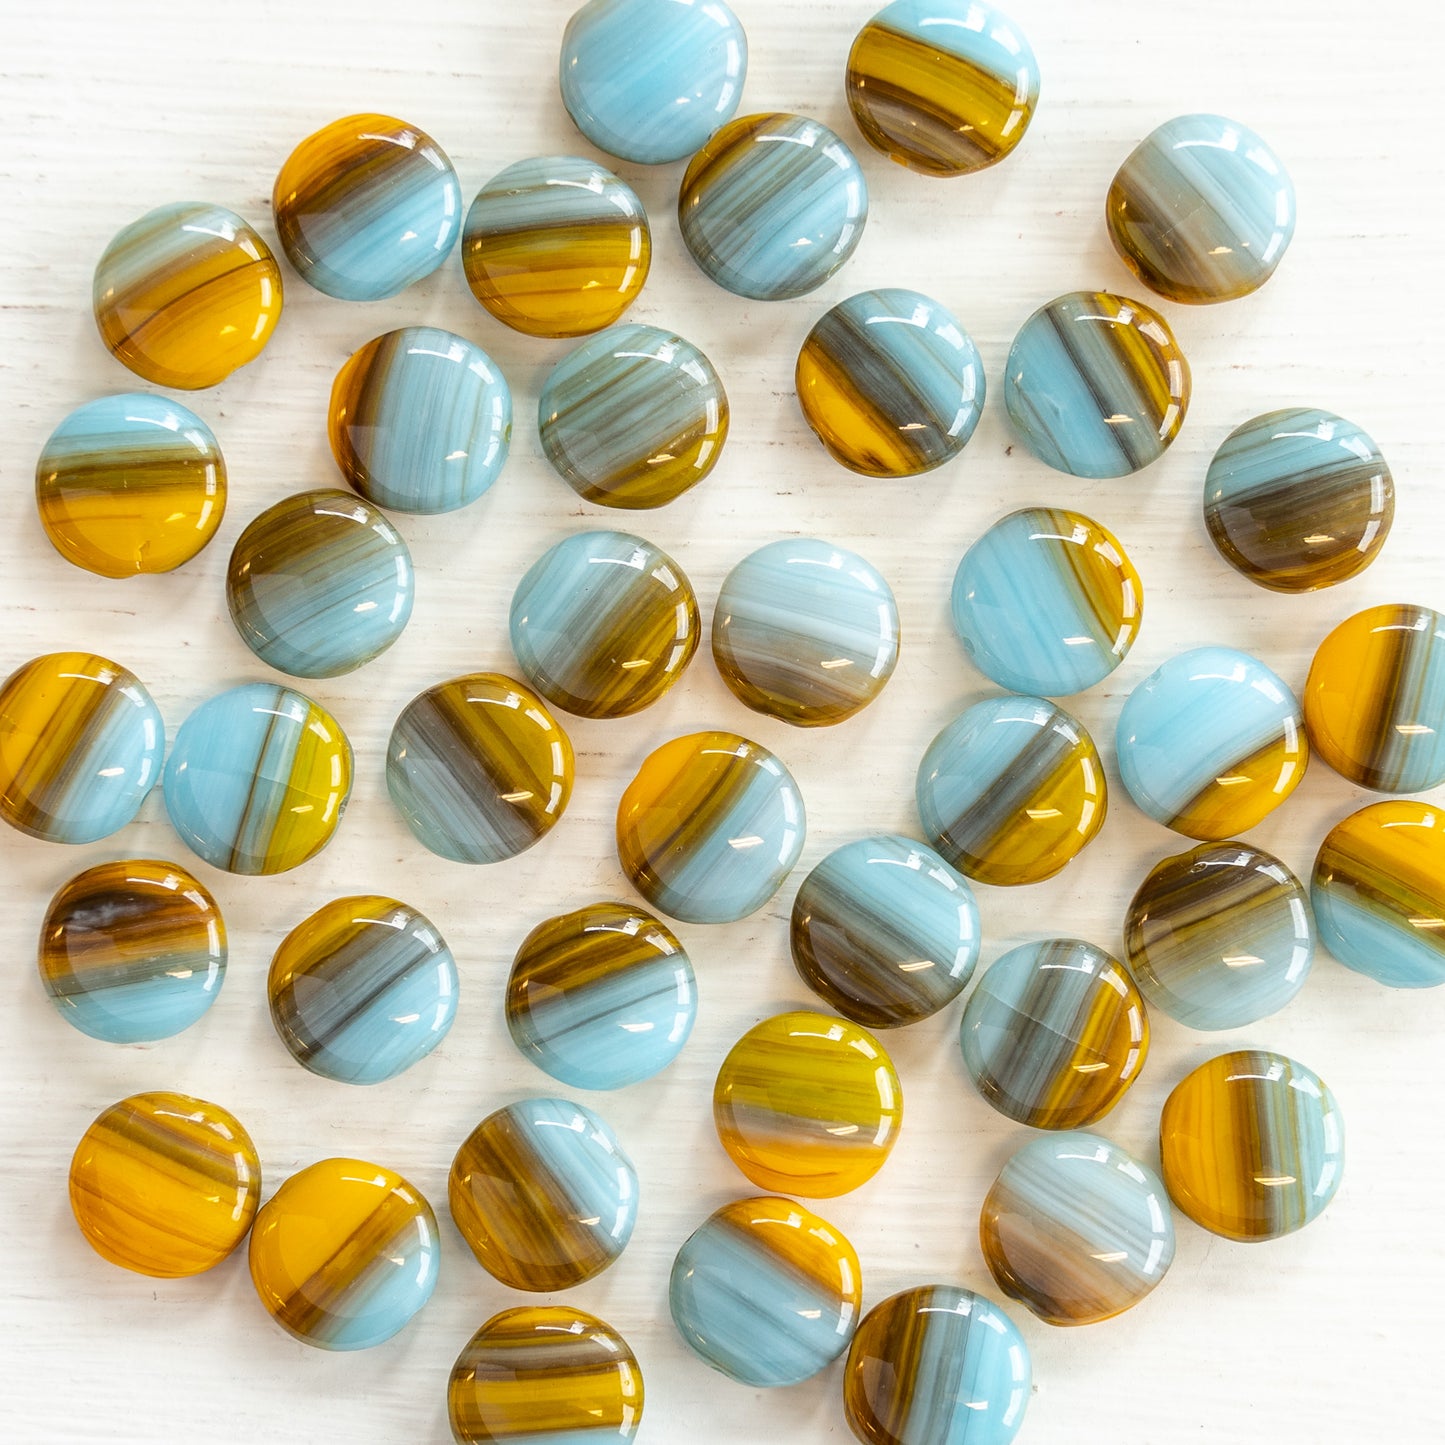 10mm Glass Coin Beads - Opaque Mixed Aqua & Ochre - 25 Beads